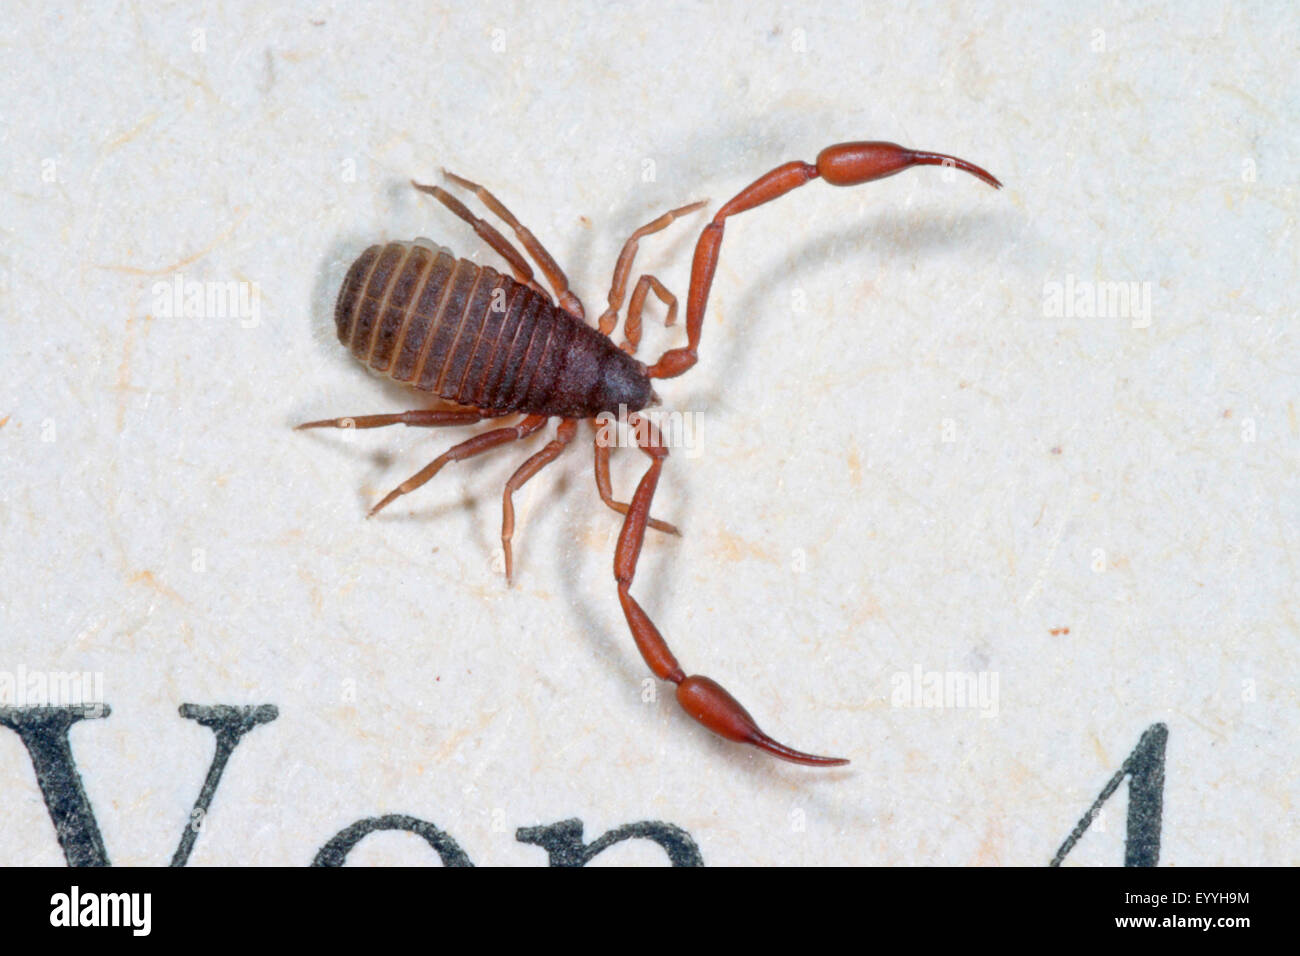 Chambre pseudoscorpion, Livre scorpion (chelifer avaient cancroides), sur un papier, Allemagne Banque D'Images